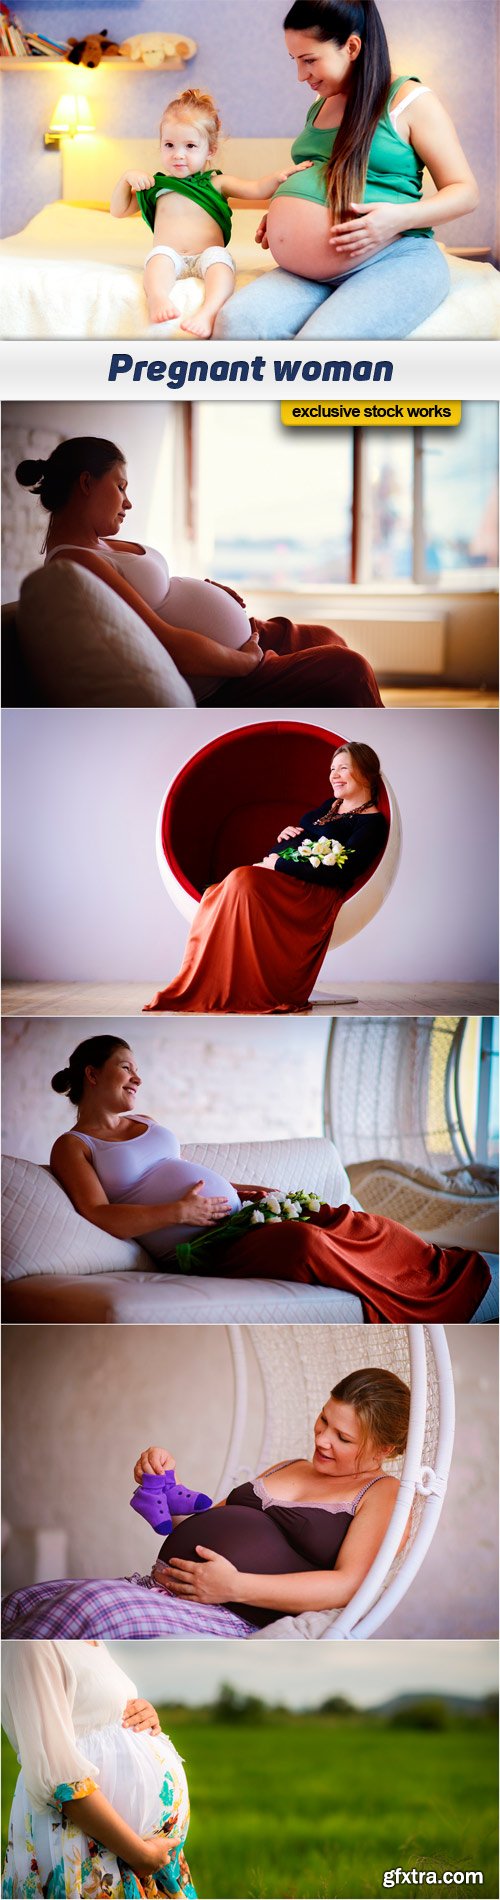 Pregnant woman 6x JPEG